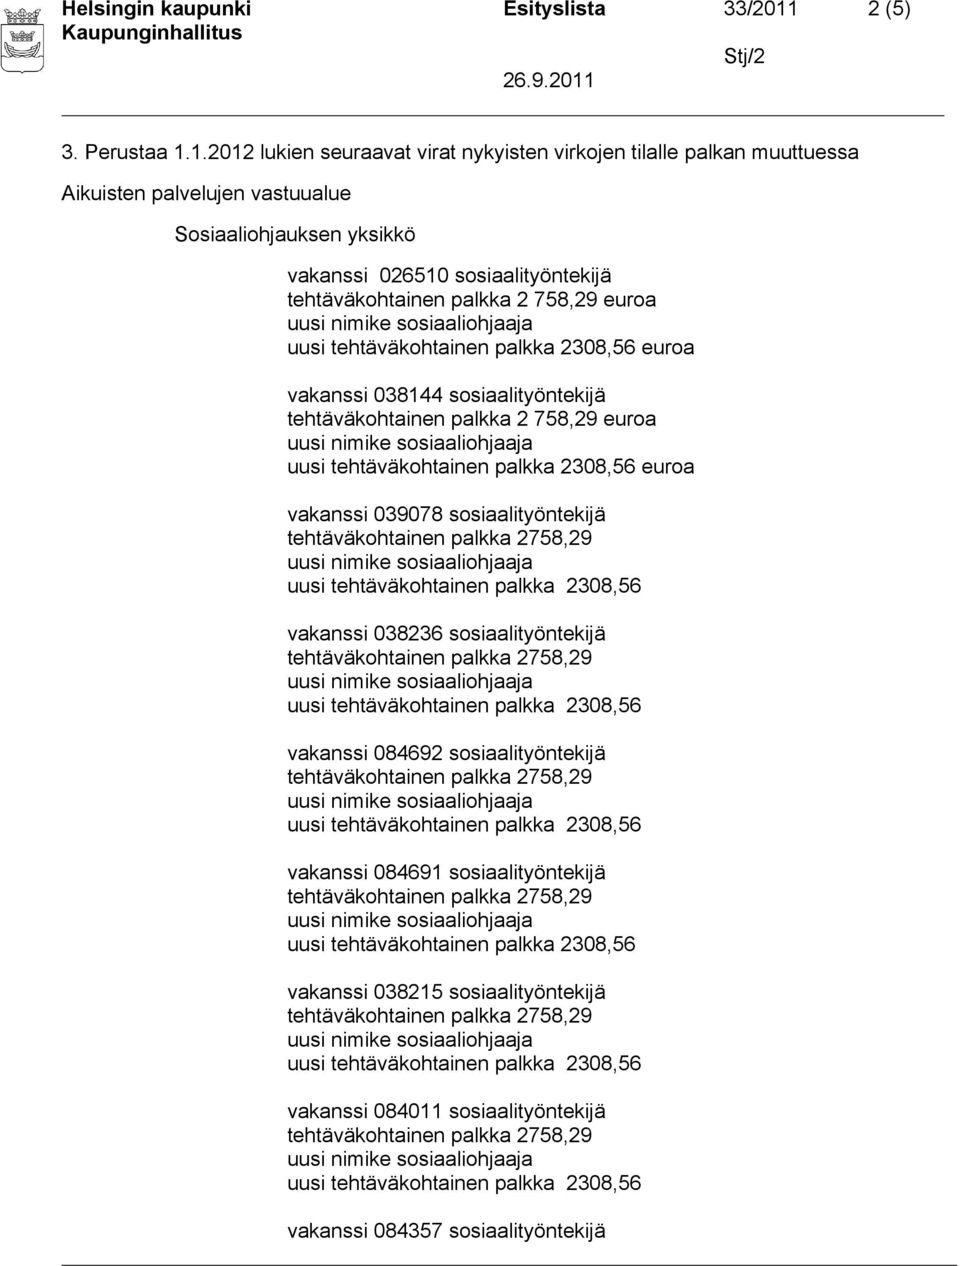 1.2012 lukien seuraavat virat nykyisten virkojen tilalle palkan muuttuessa Sosiaaliohjauksen yksikkö vakanssi 026510